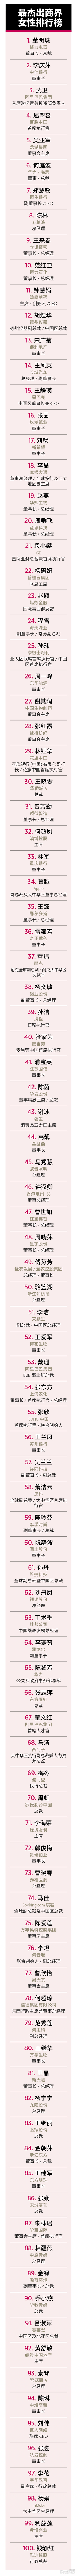 福布斯中国发最杰出商界女性排行榜：科技领域成绩亮眼